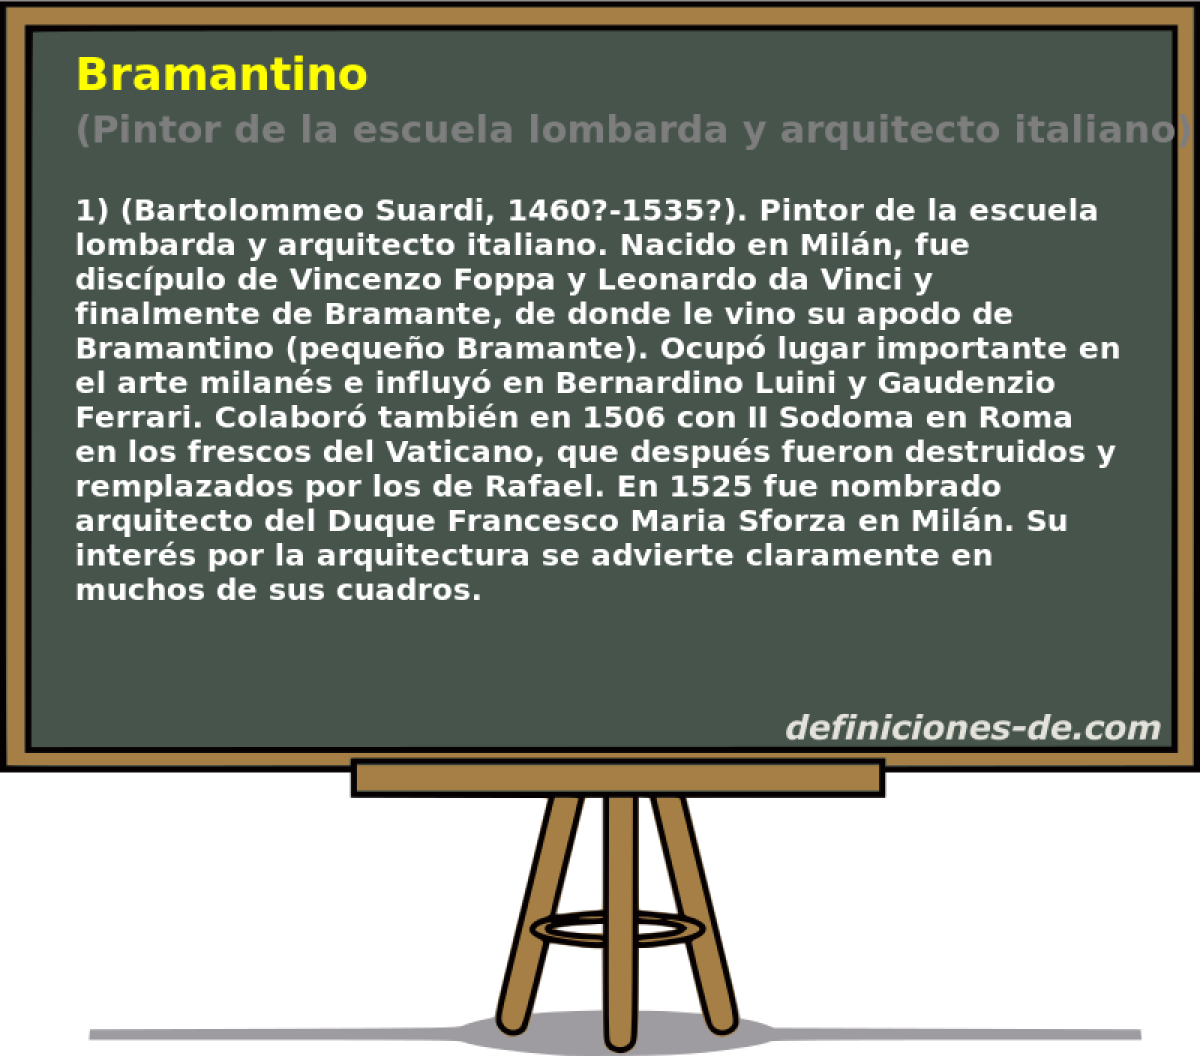 Bramantino (Pintor de la escuela lombarda y arquitecto italiano)